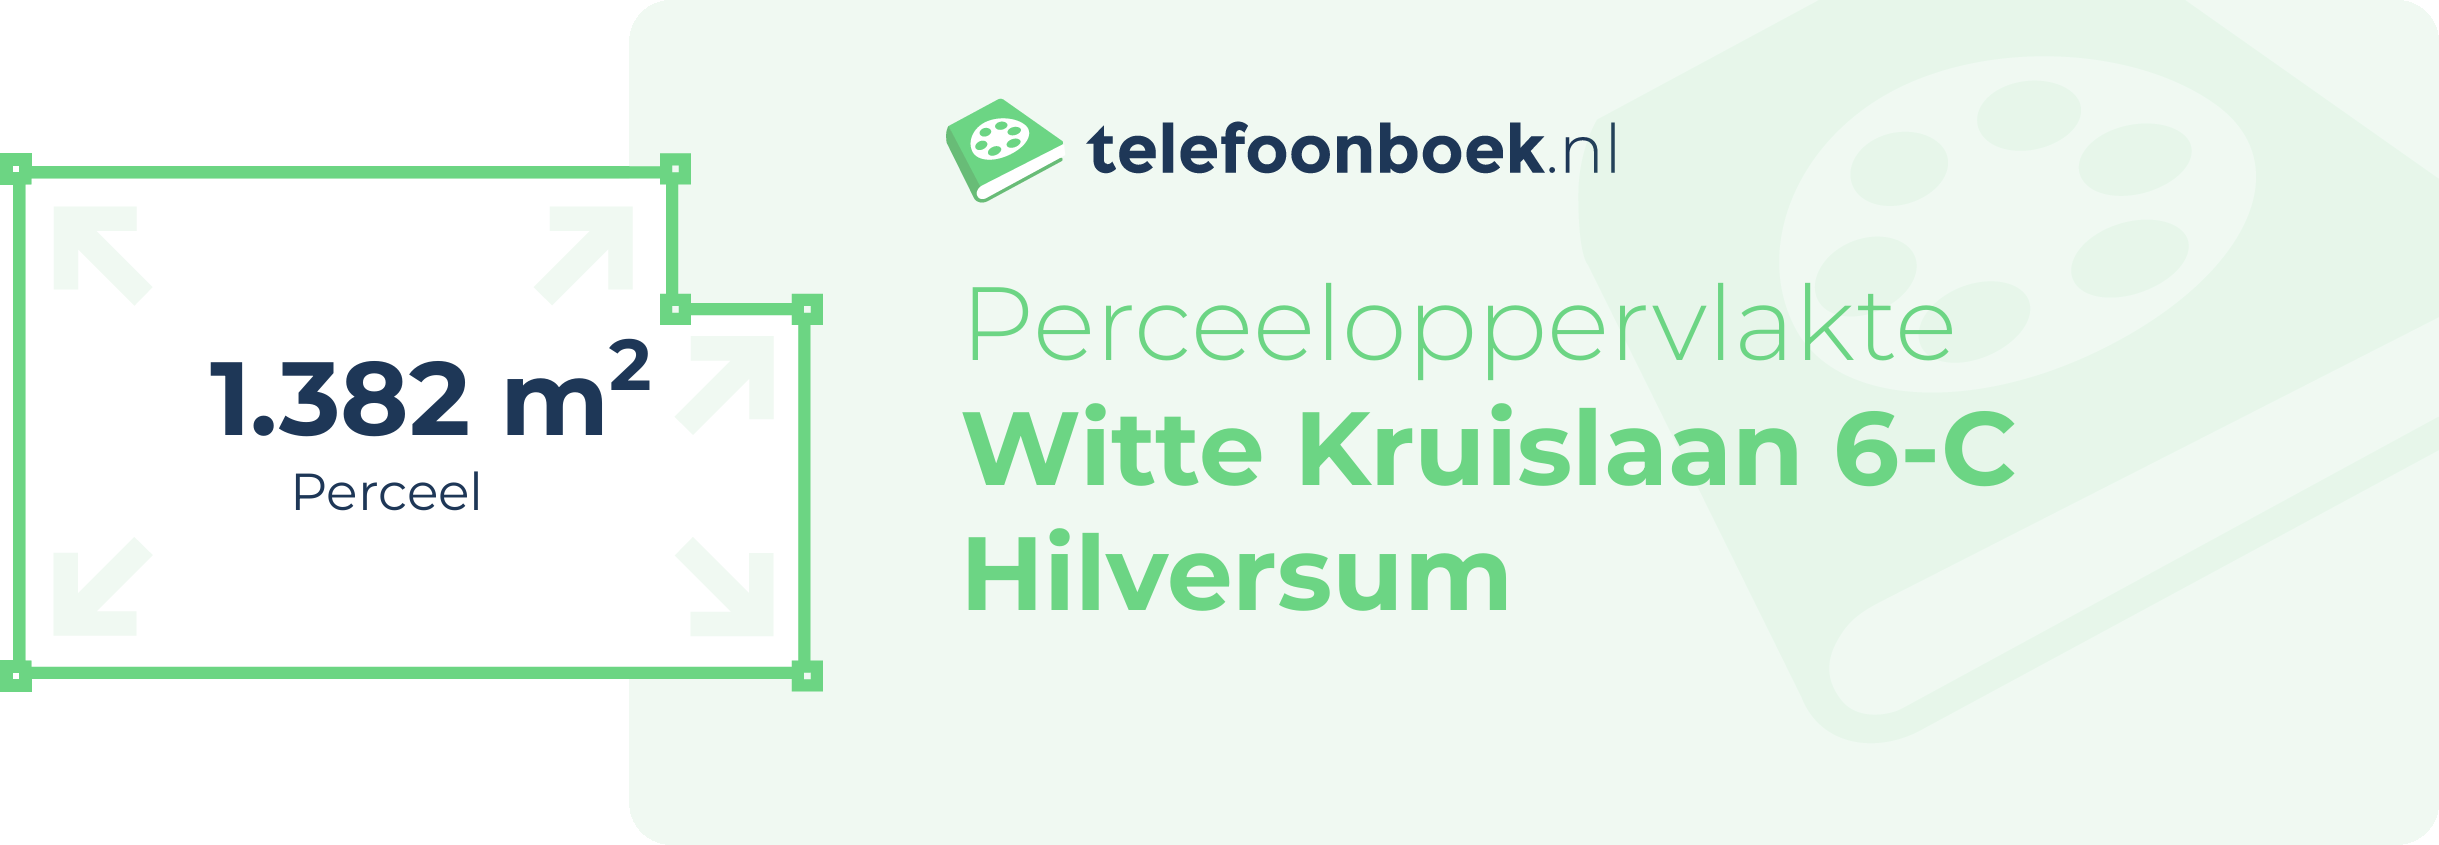 Perceeloppervlakte Witte Kruislaan 6-C Hilversum